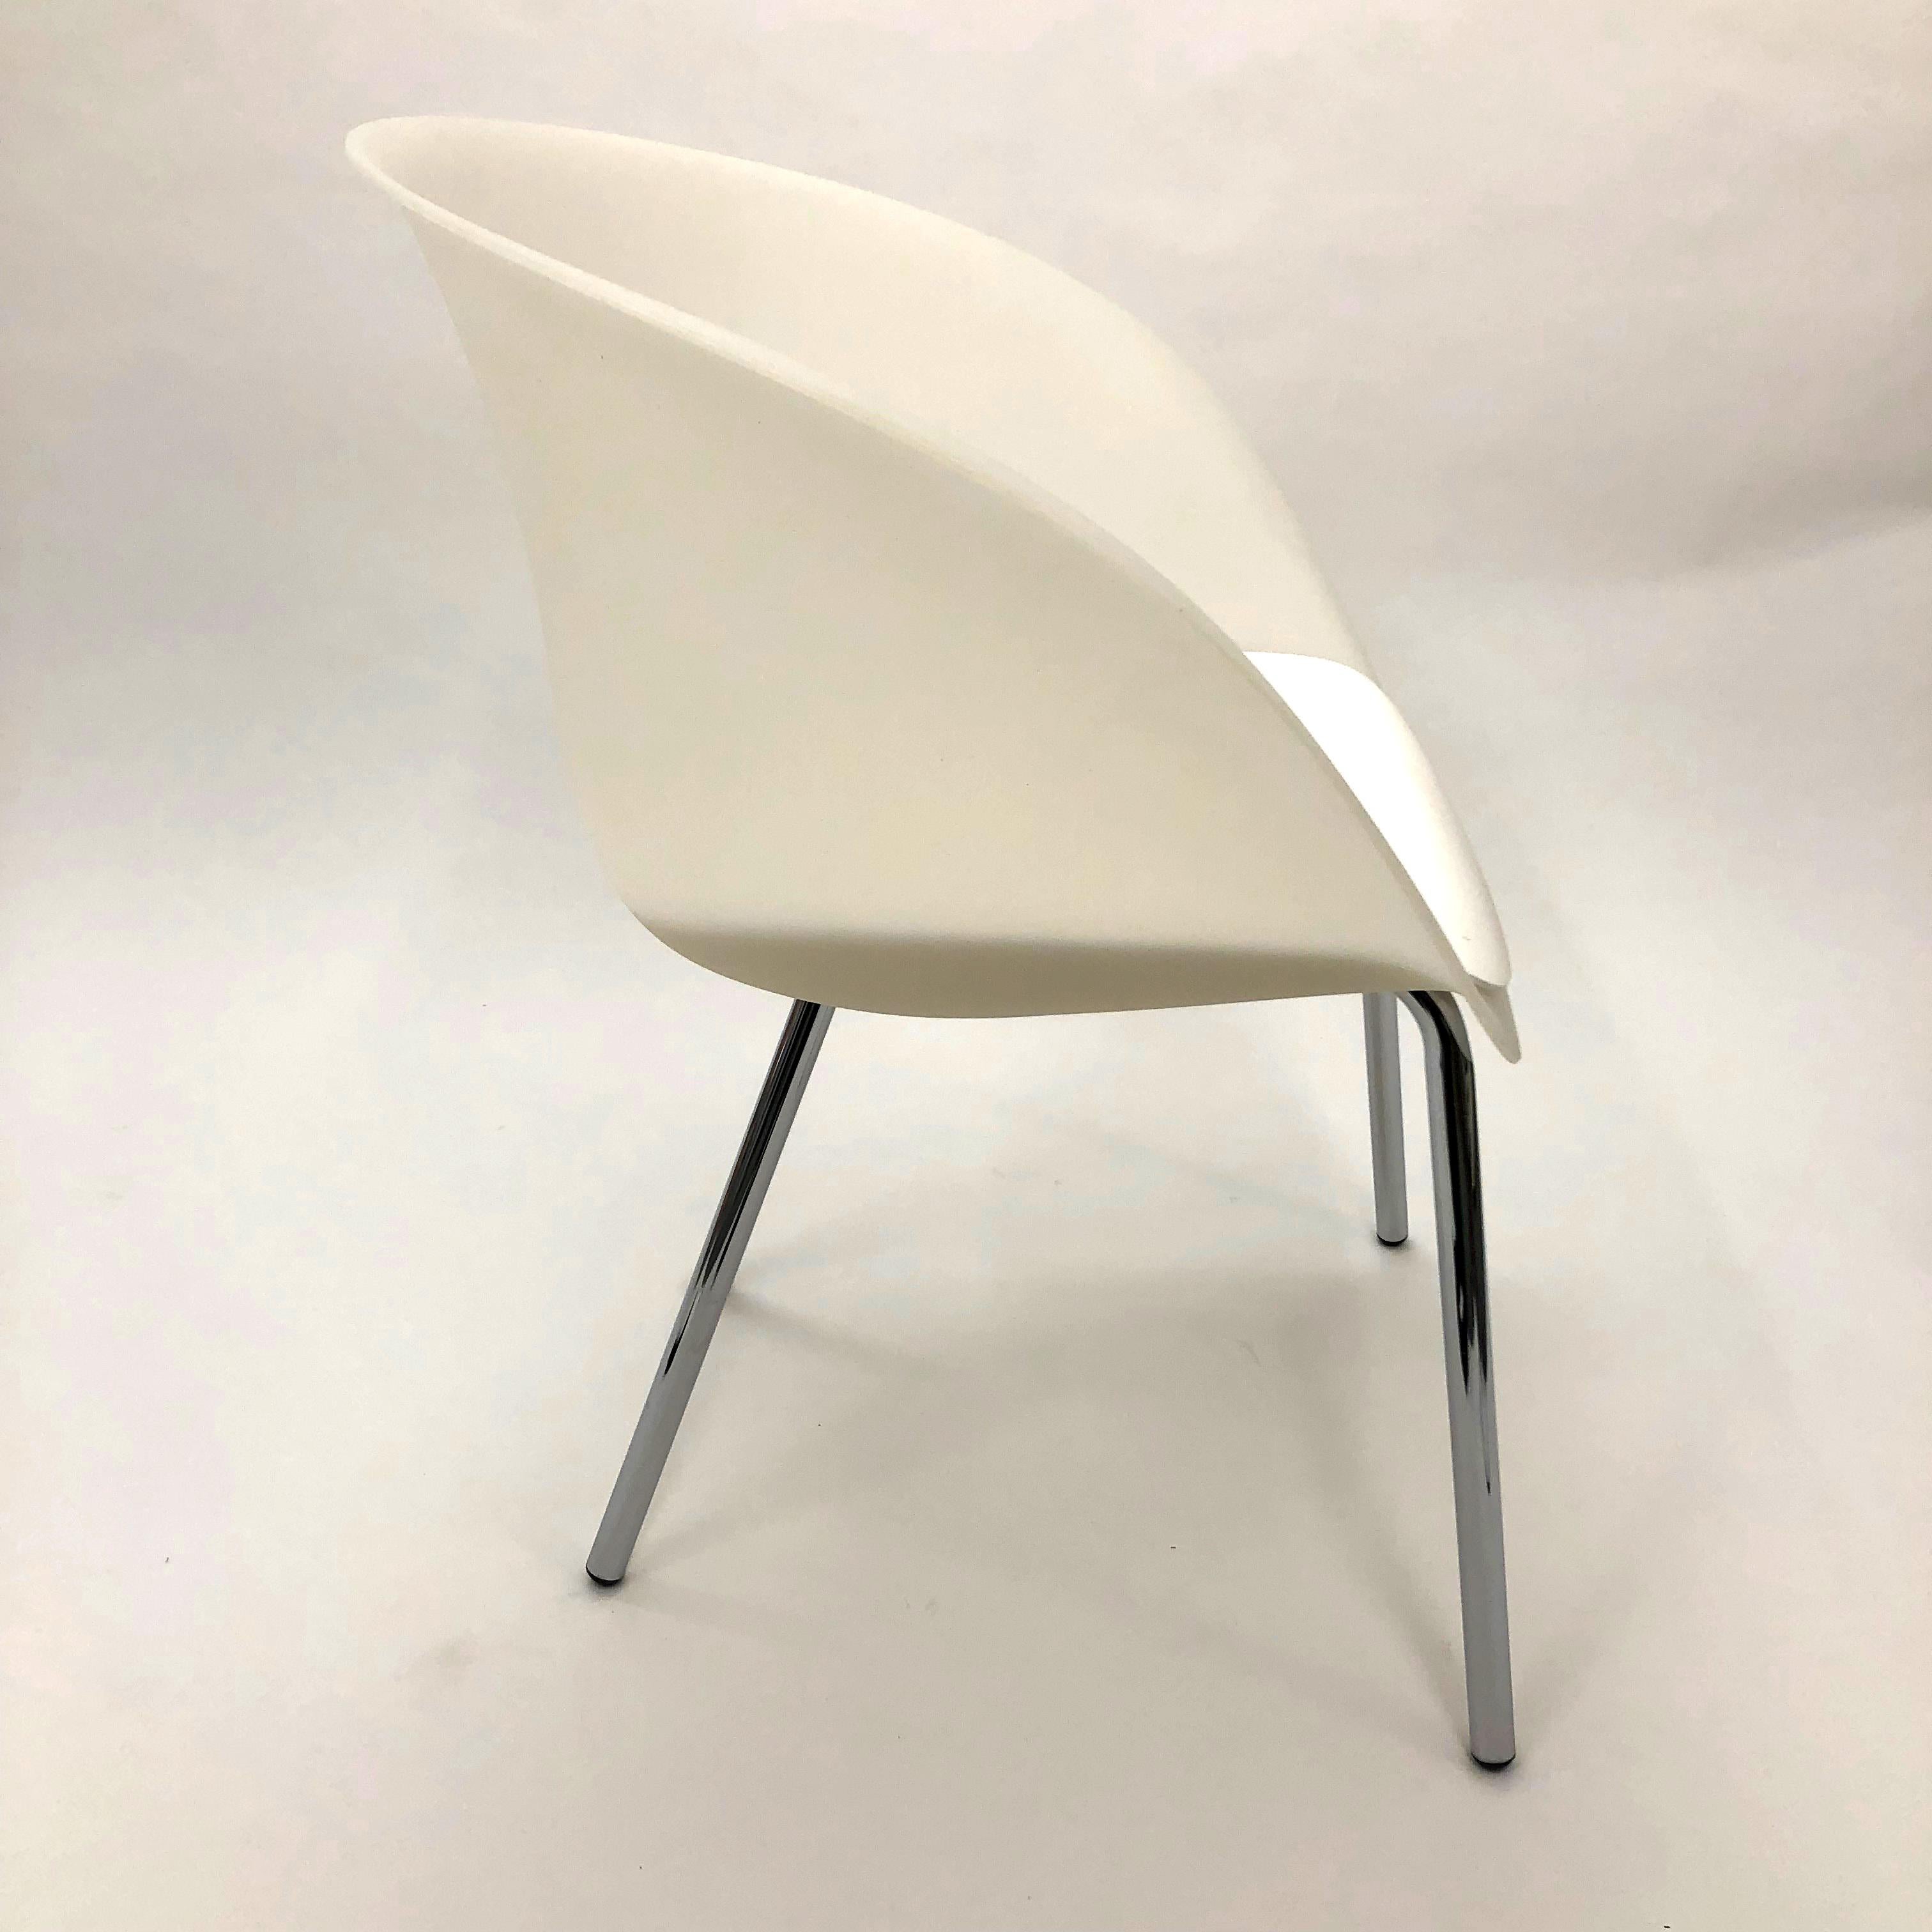 Der Olo Chair von Andrew Jones für Keilhauer ist eine Aktualisierung des klassischen Wannenstuhls aus geformtem Kunststoff und äußerst vielseitig. Er kann als Beistellstuhl, Konferenz-, Empfangs- oder Loungesessel verwendet werden. 

Diese